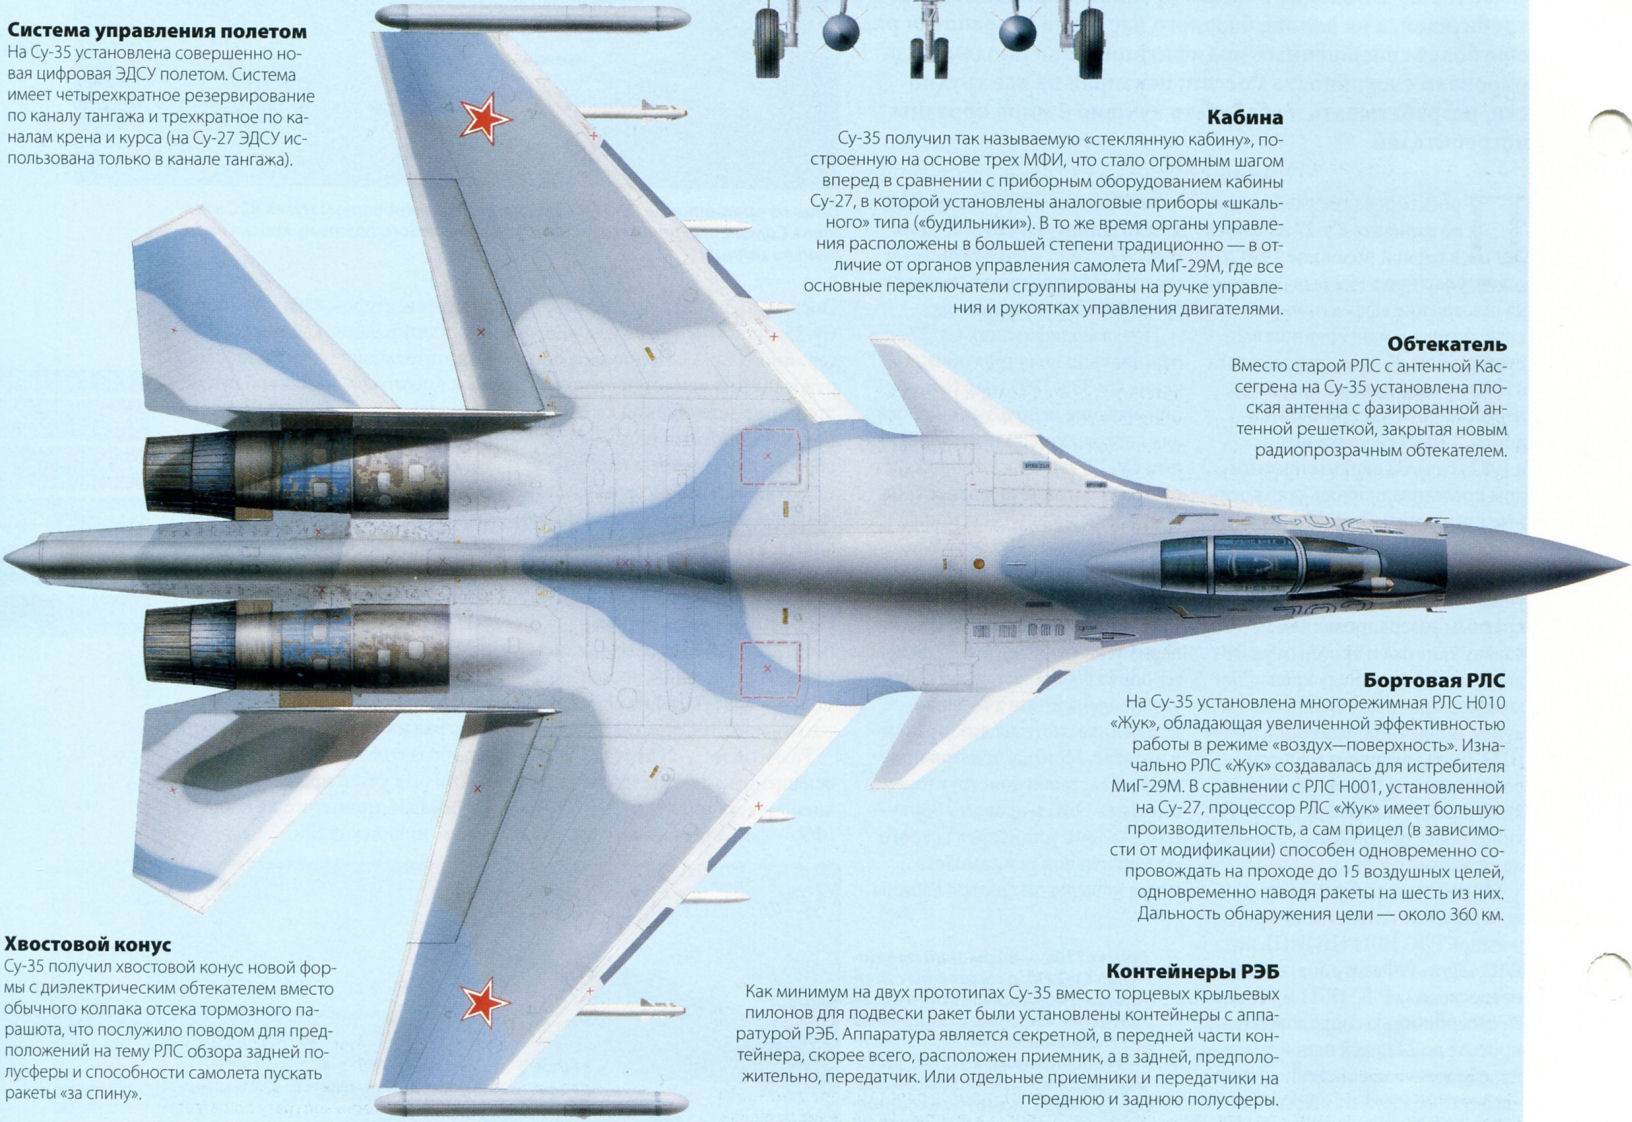 Су-35: технические характеристики. истребитель ввс россии